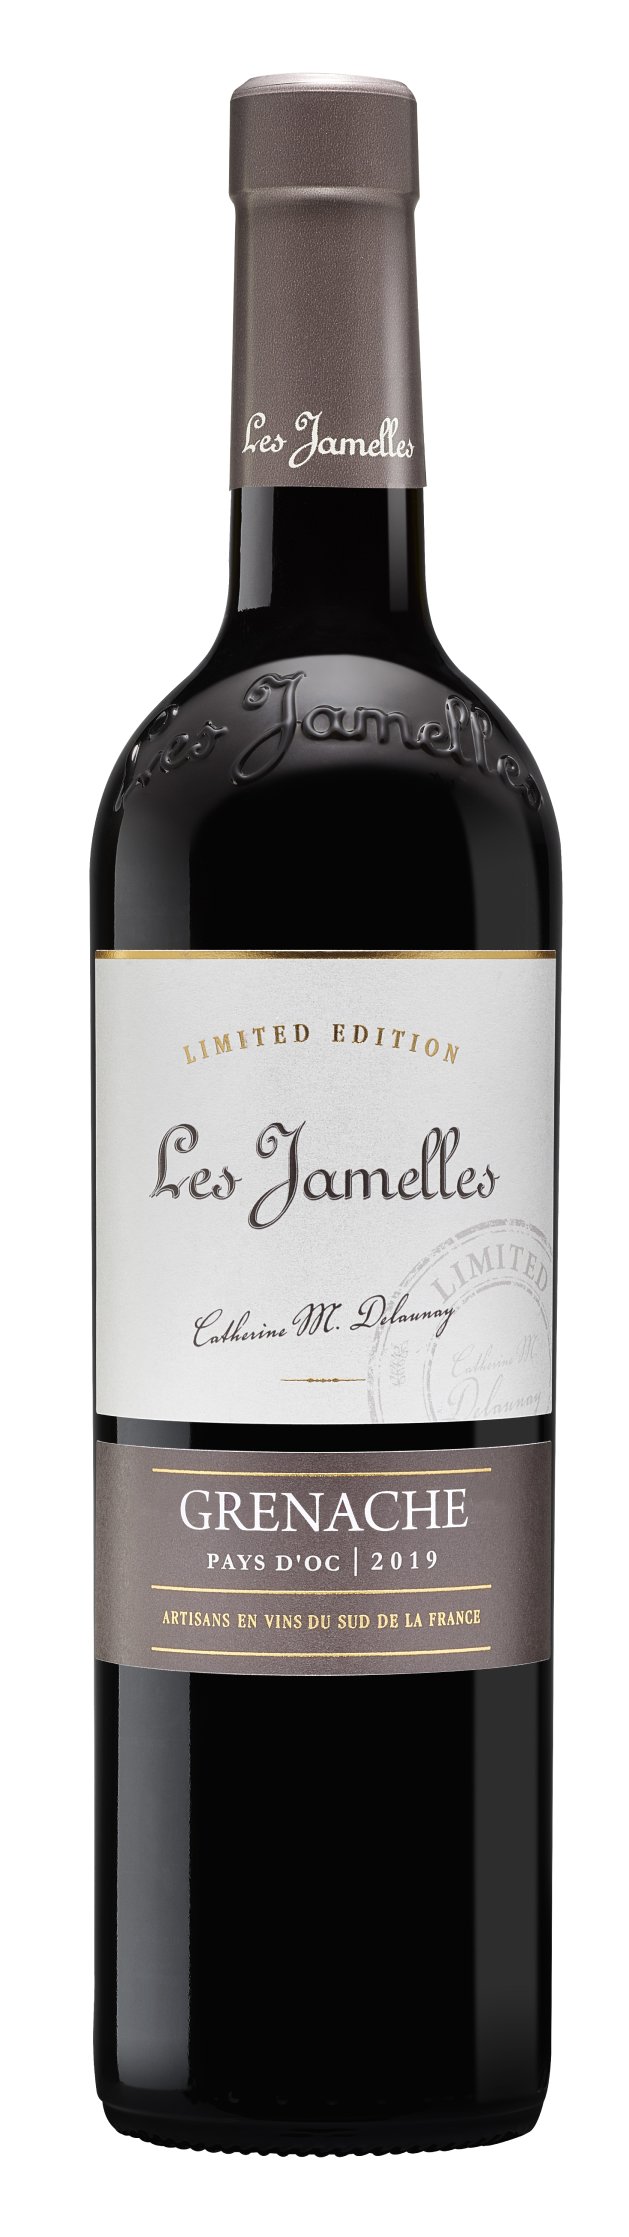 Les Jamelles Grenache Limited Edition 2019